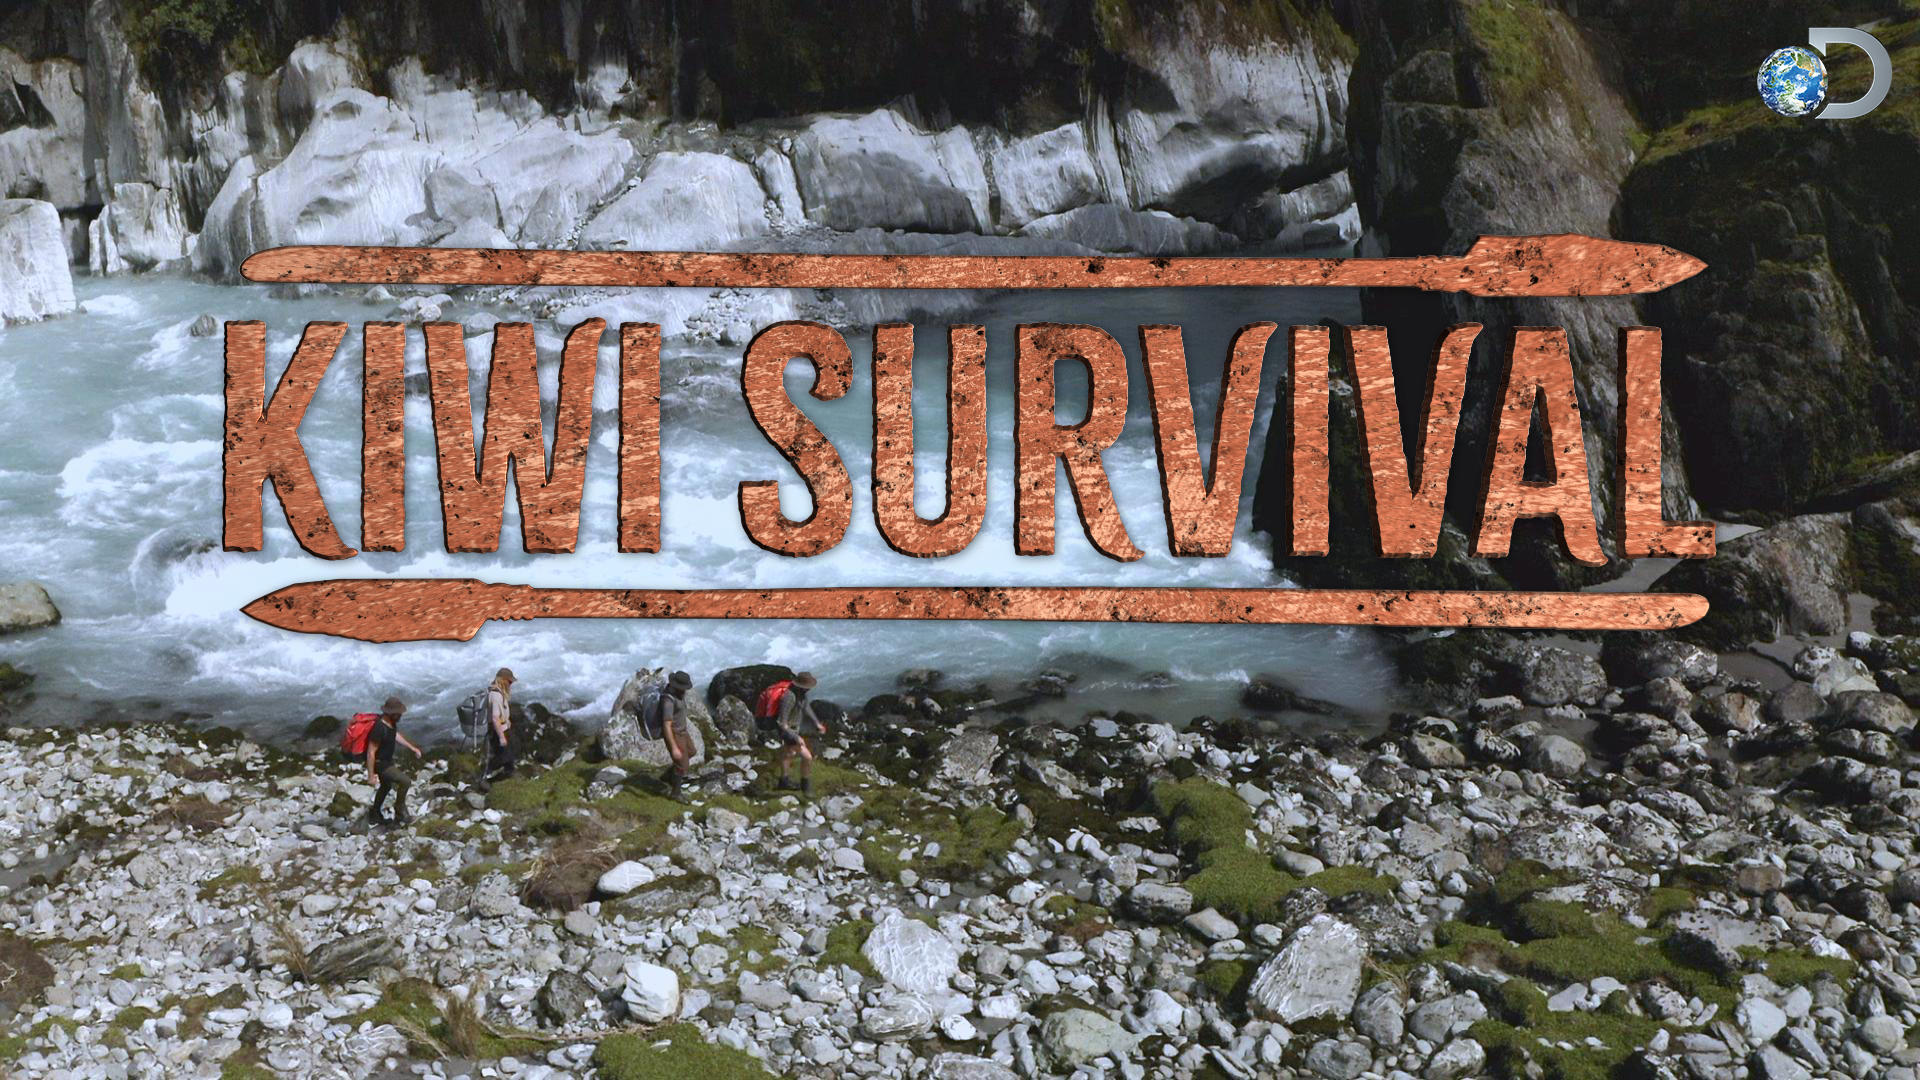 Kiwi Survival